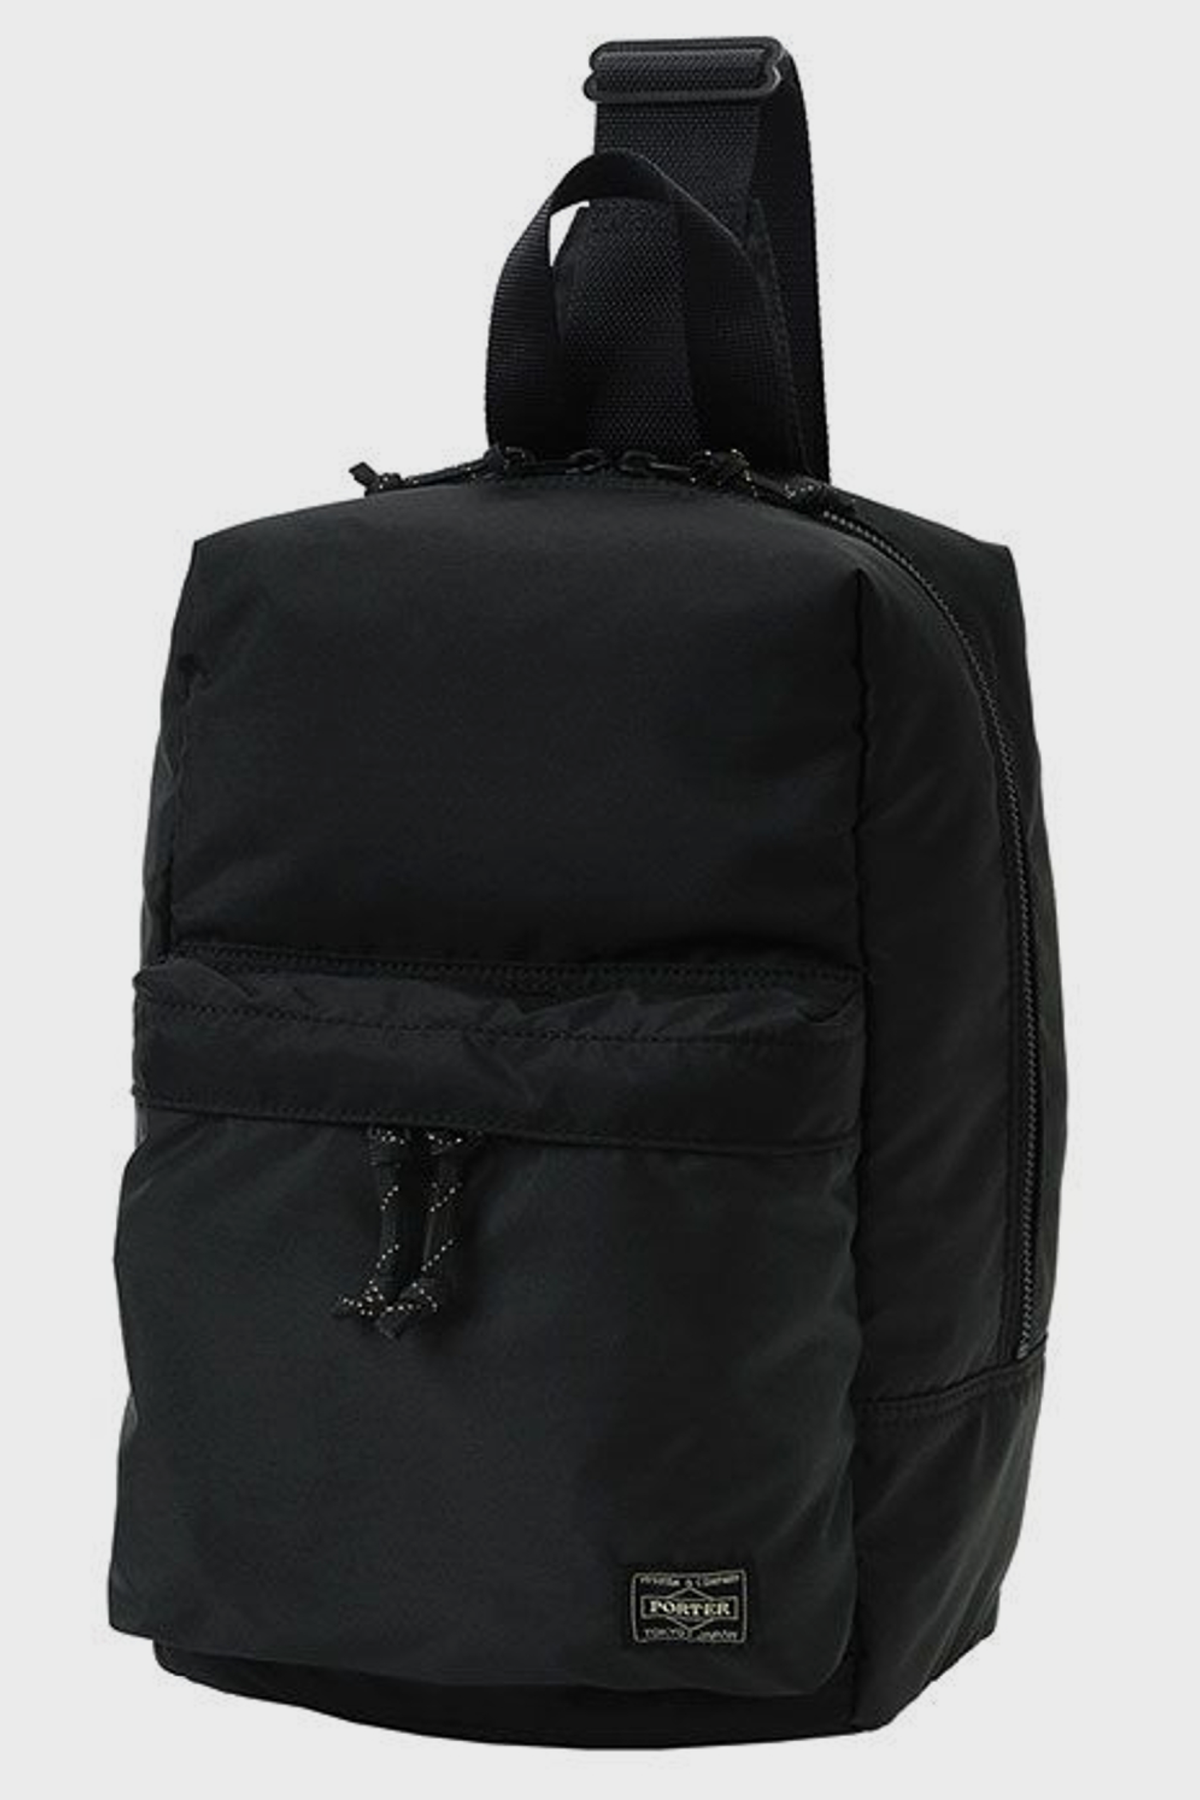 Porter Force Shoulder Sling Bag - Black